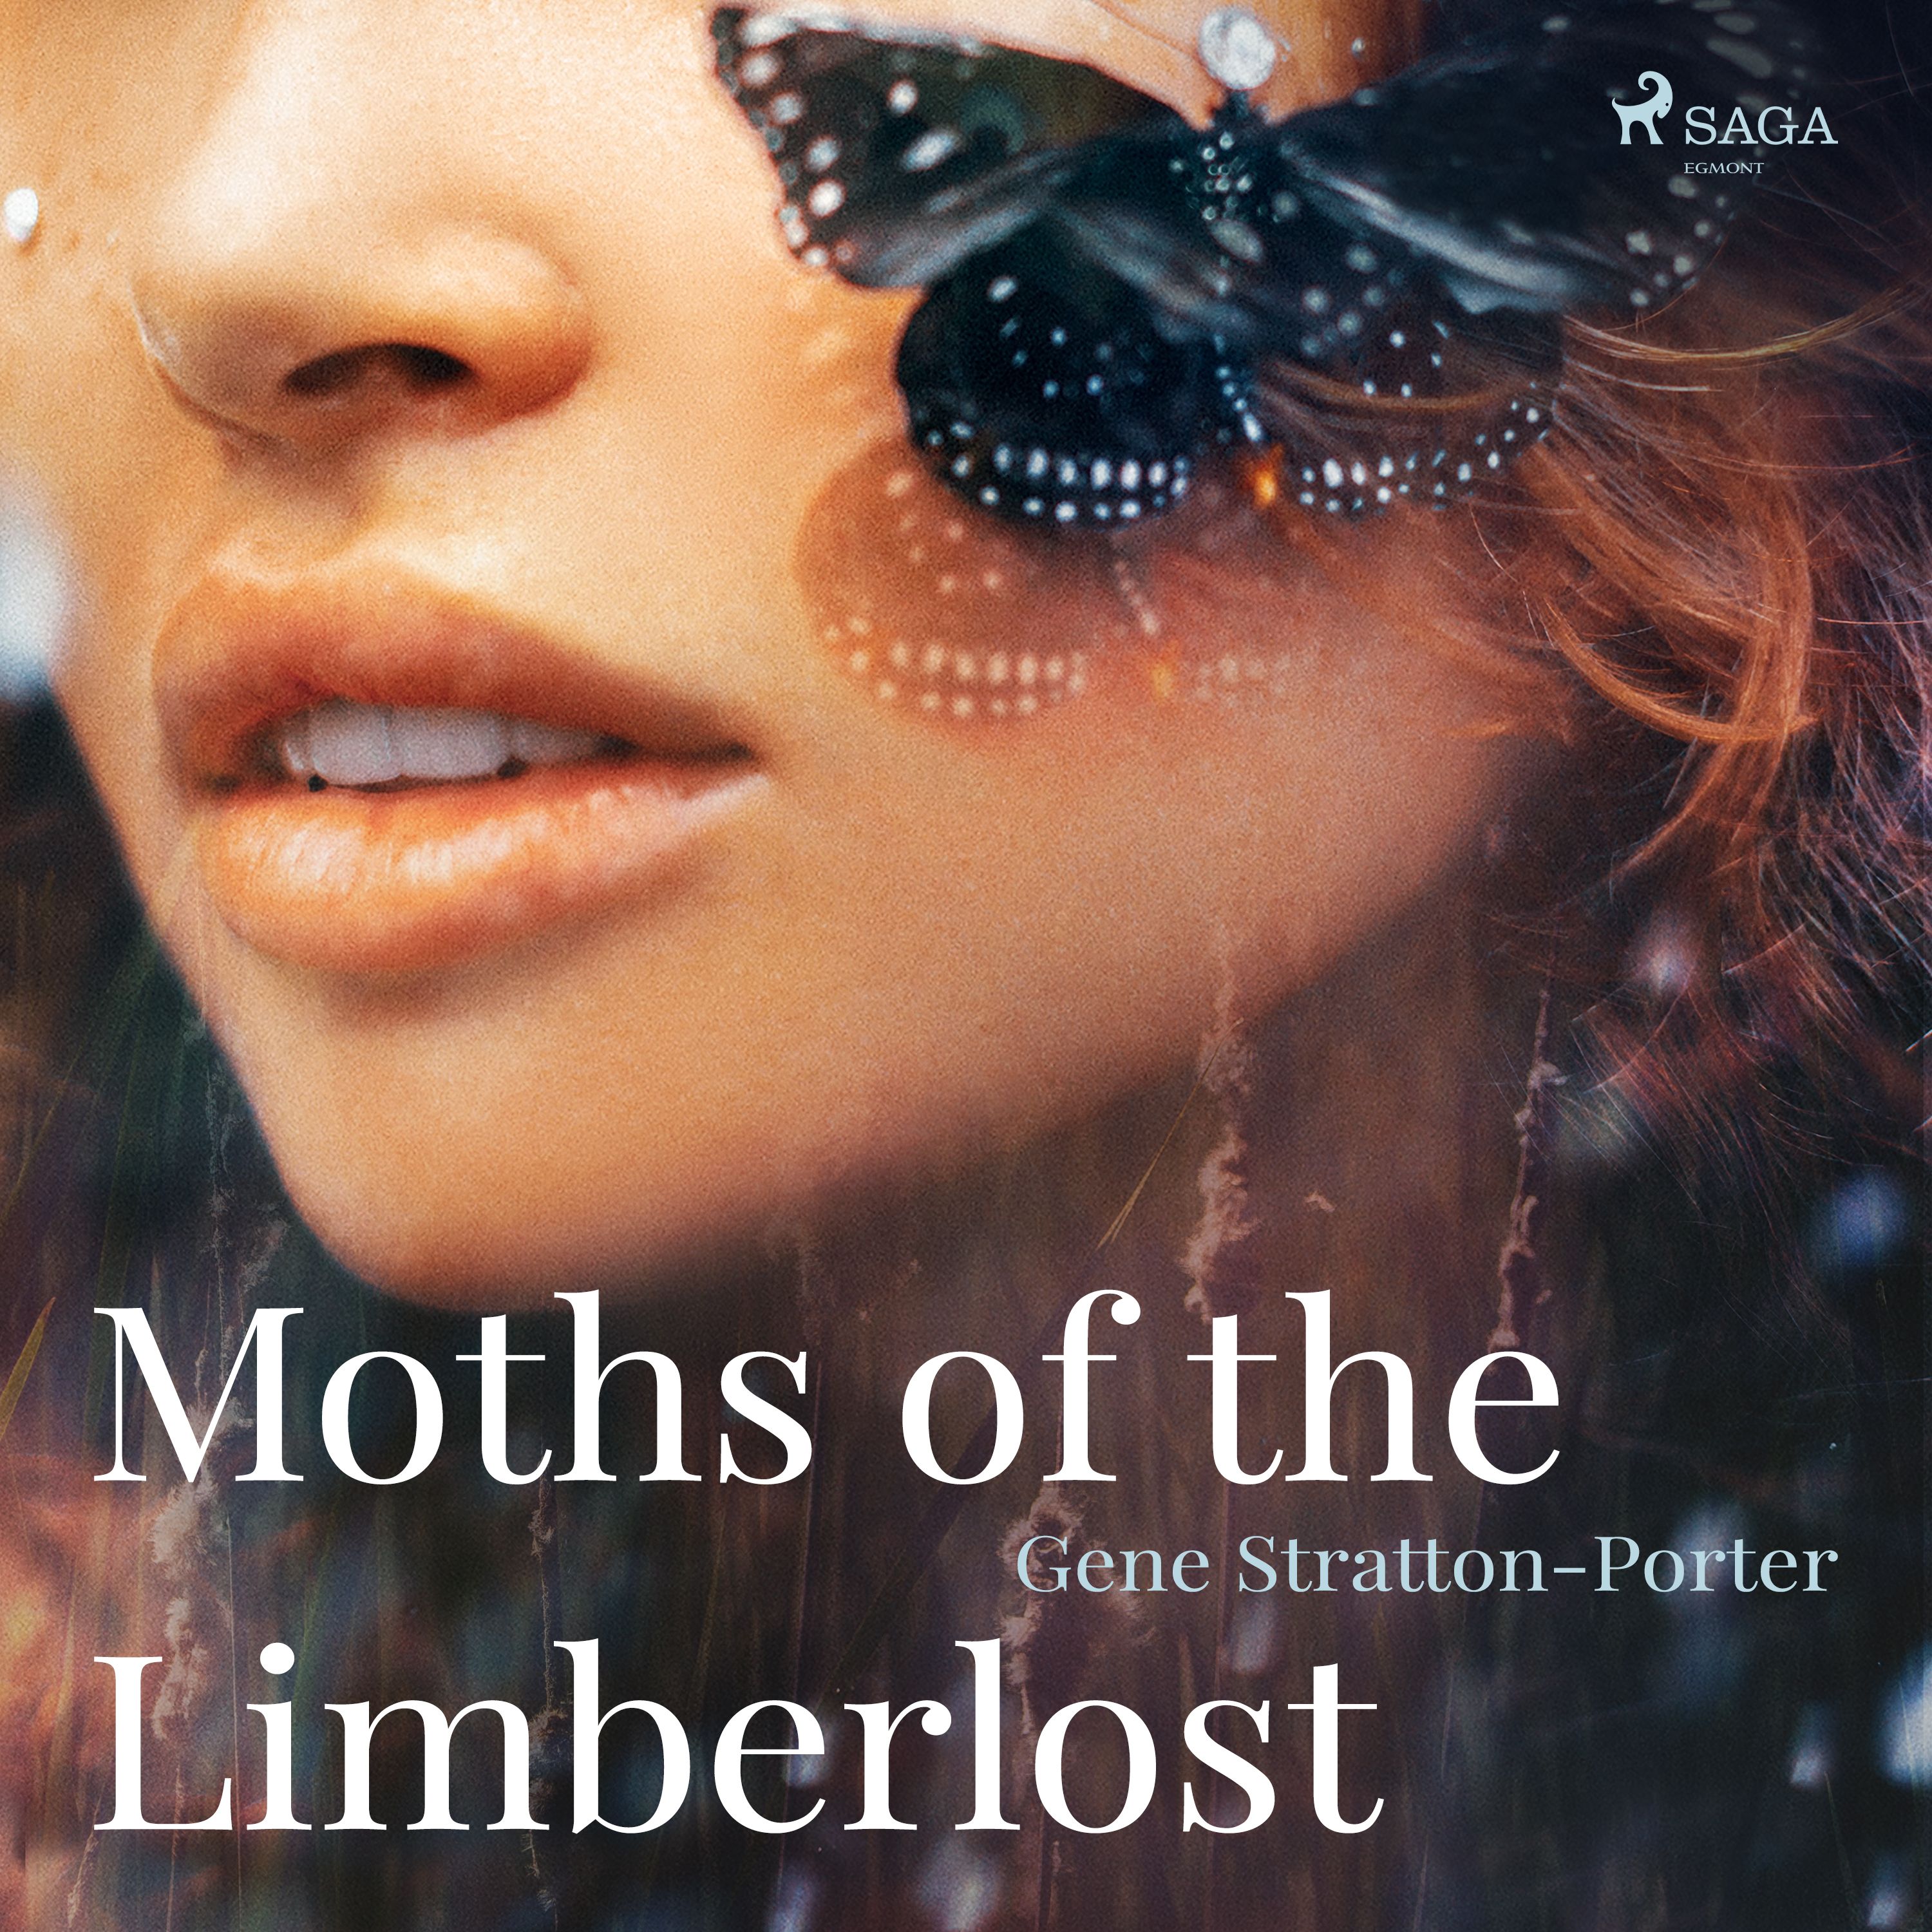 Moths of the Limberlost, ljudbok av Gene Stratton-Porter